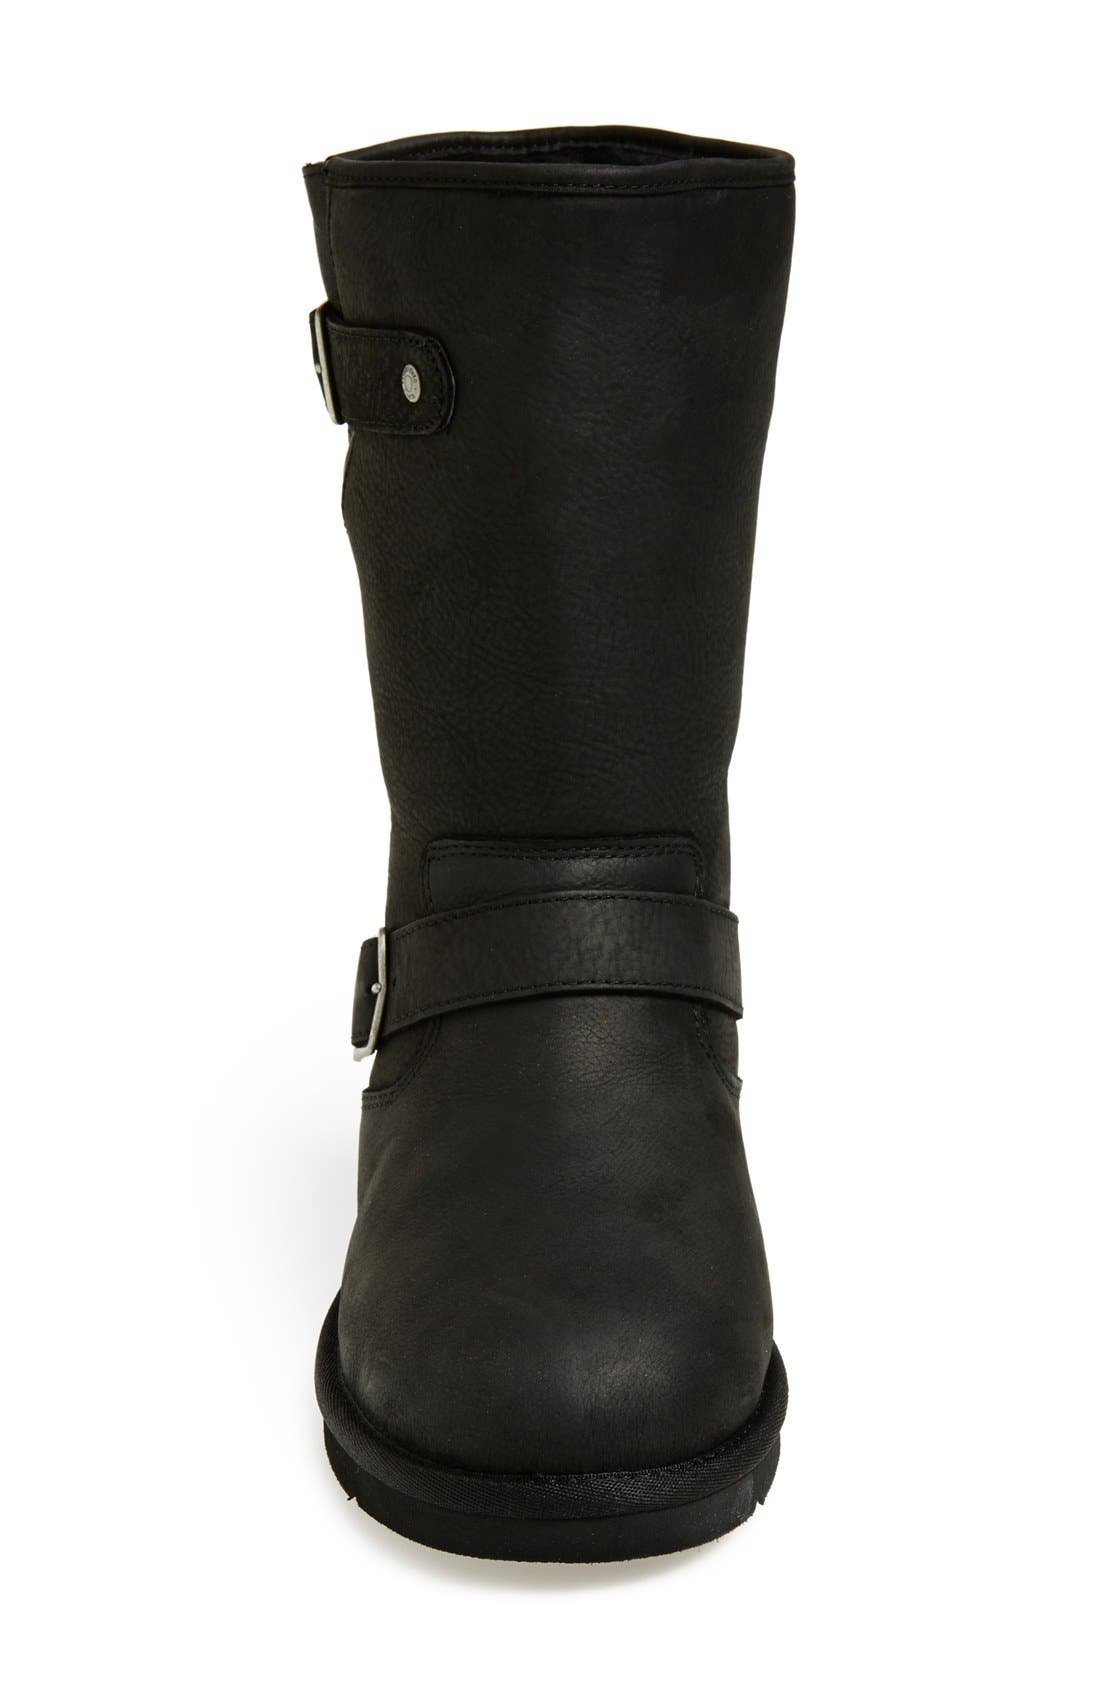 ugg womens sutter boots black